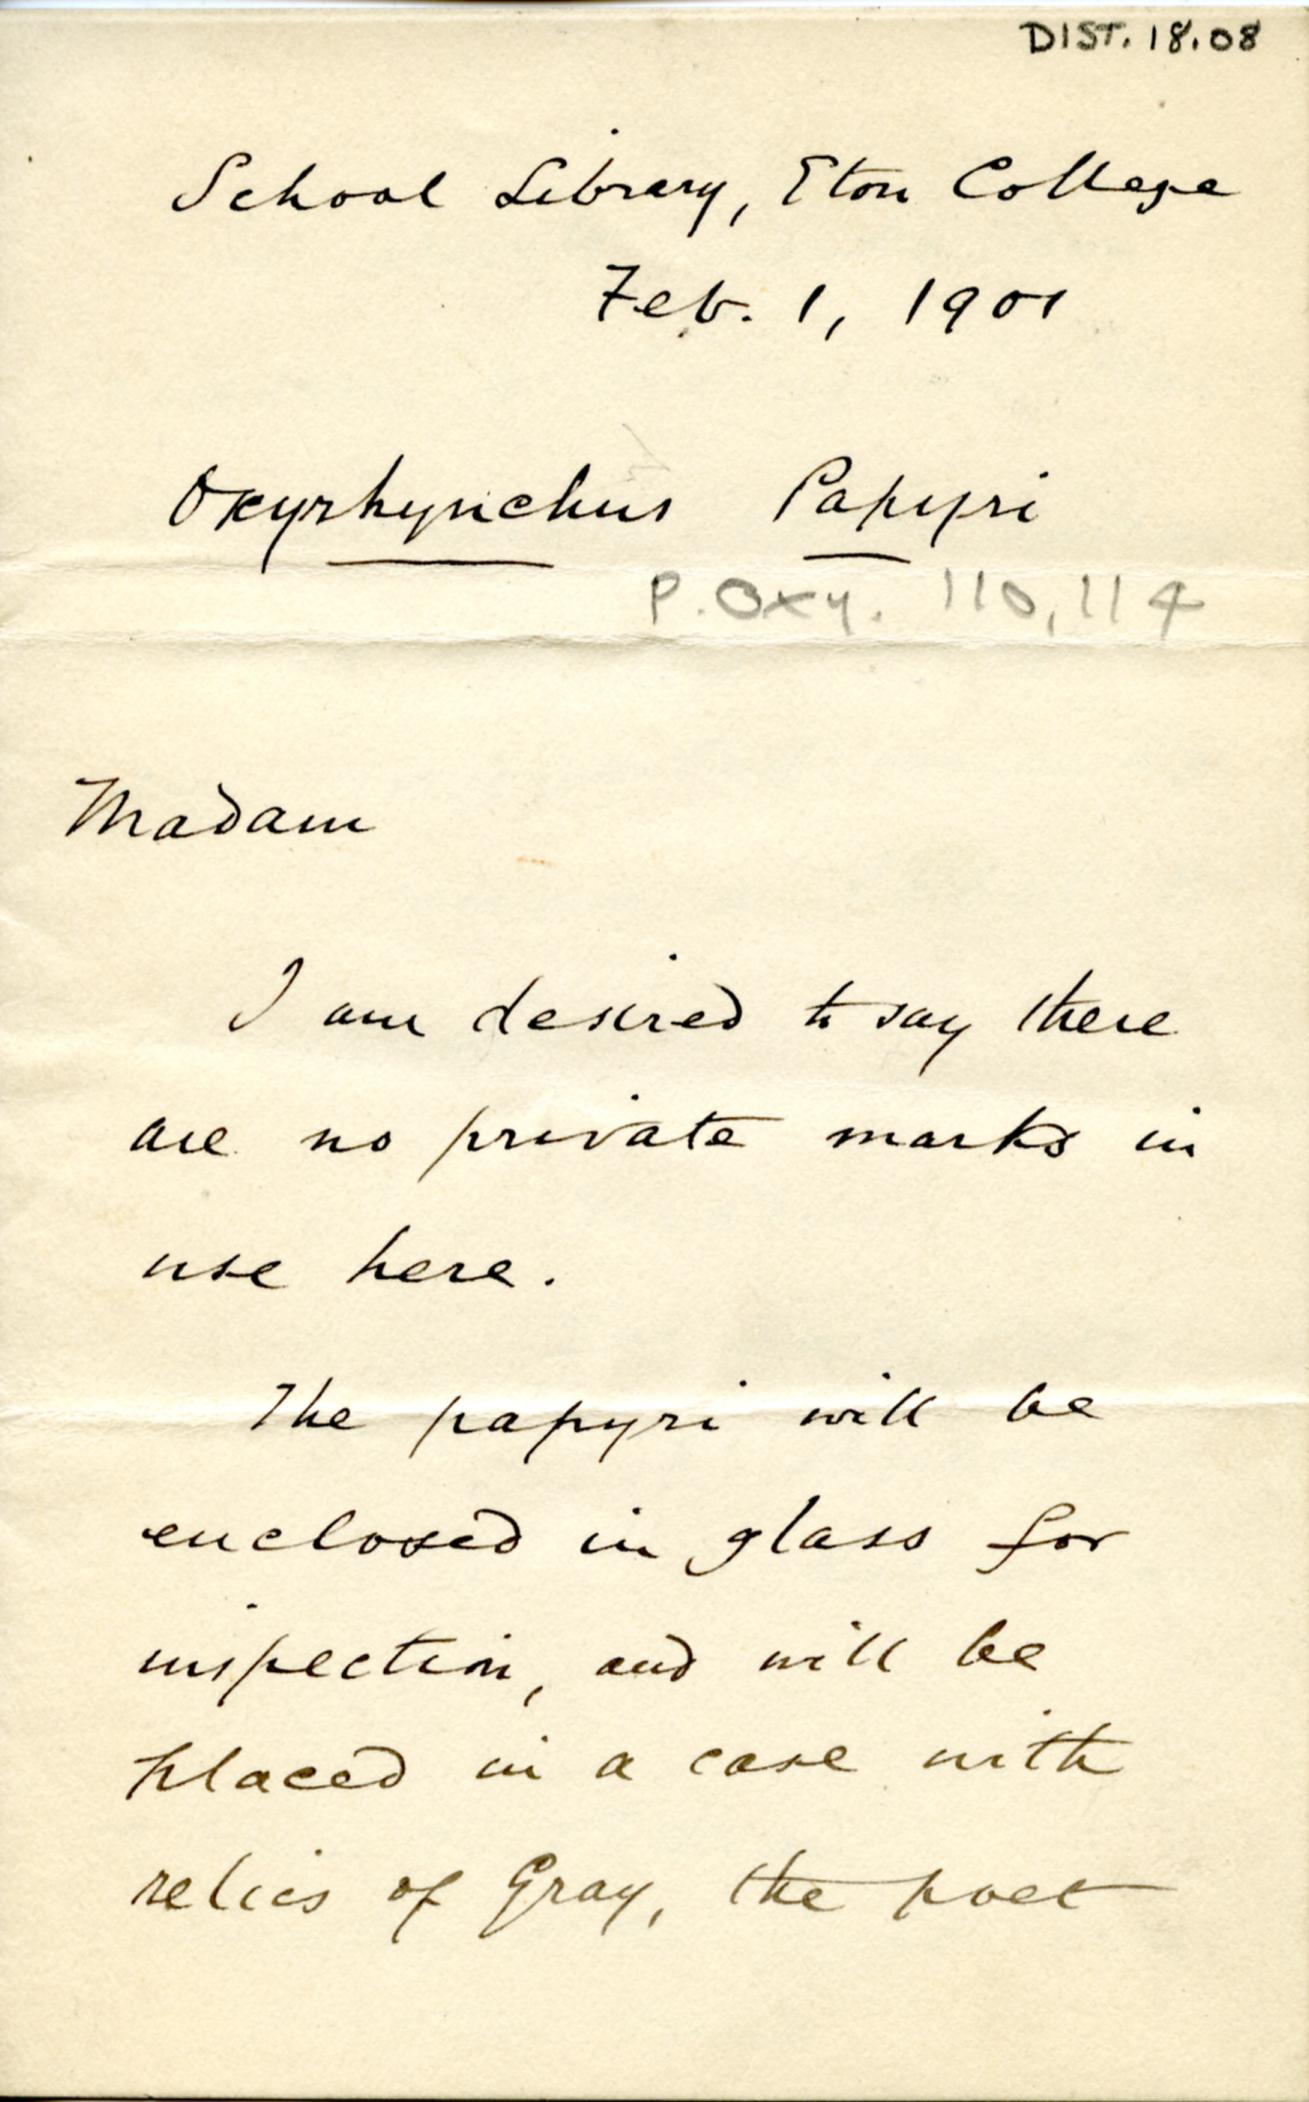 1895-1903 Oxyrhynchus, Faiyum DIST.18.08a